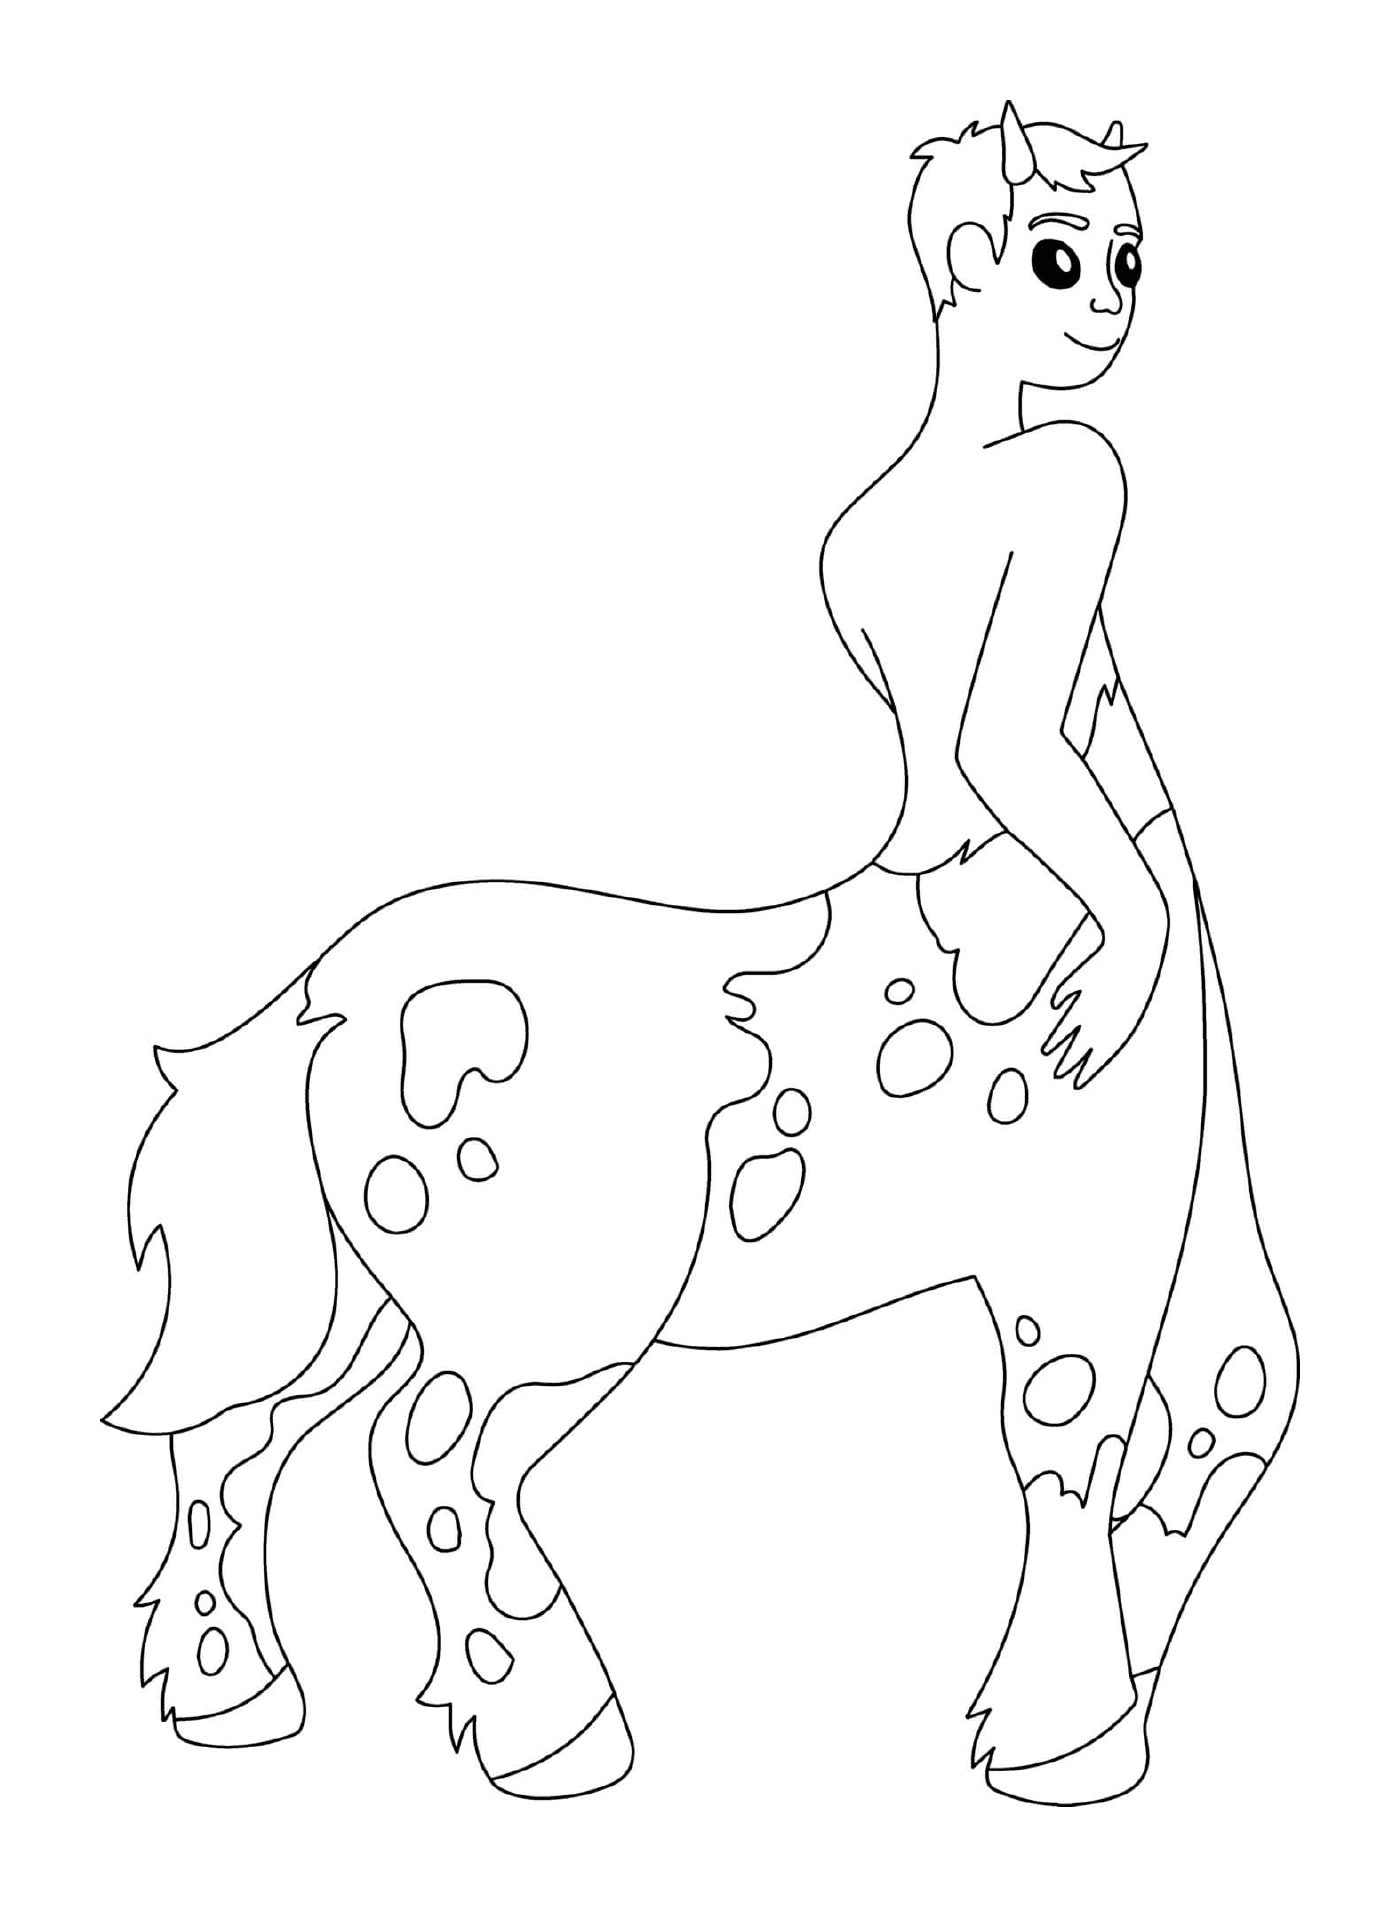  Centaur half-man half-horse Greek mythology 